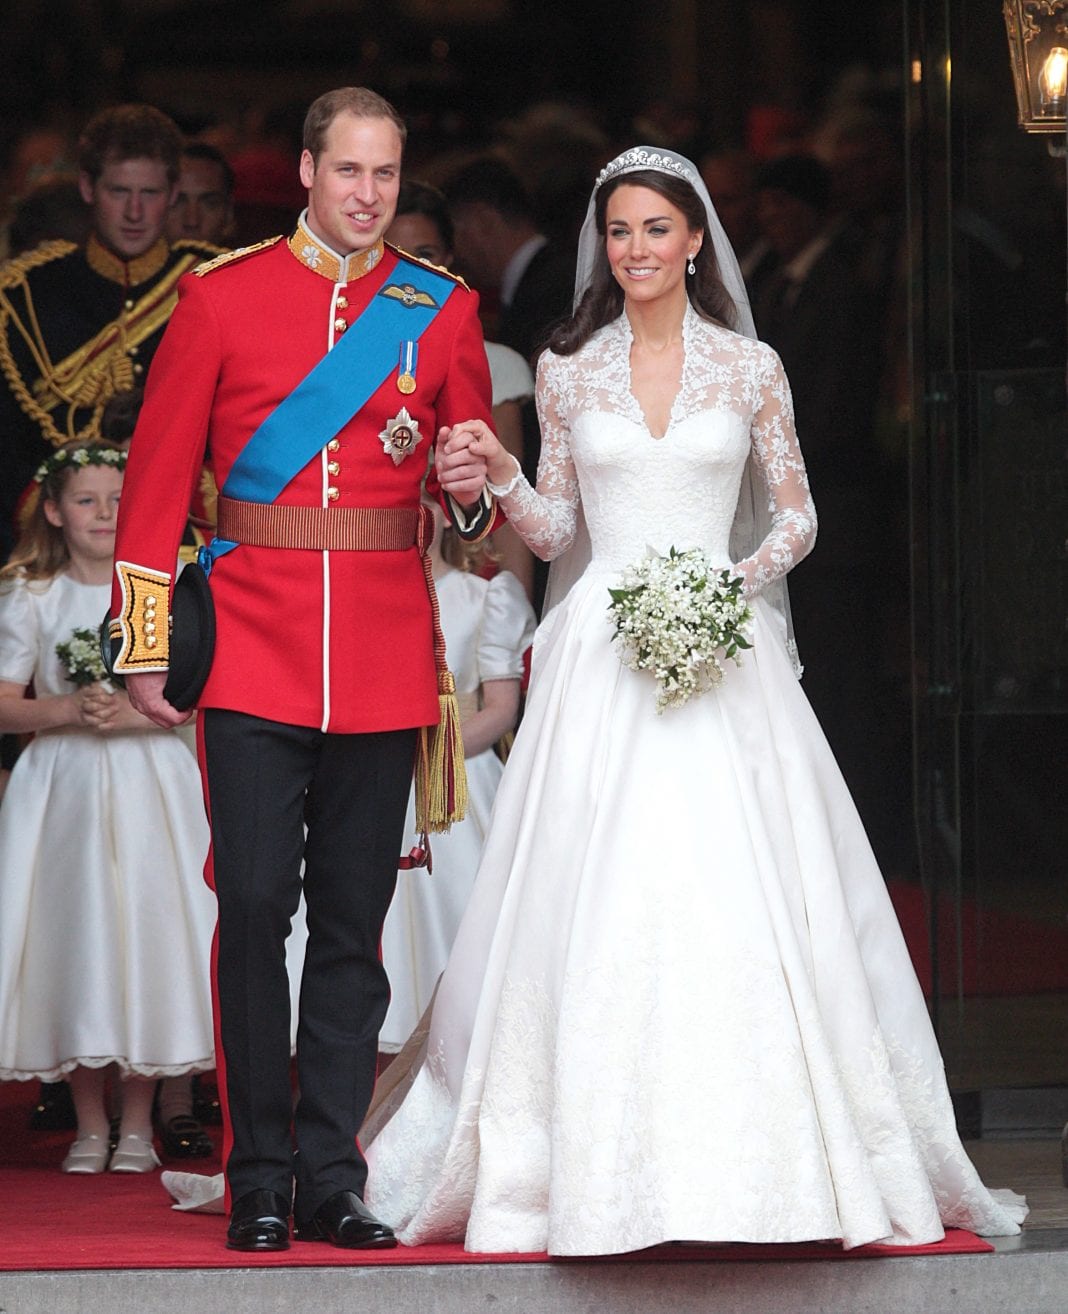 Πρίγκιπας William- Kate Middleton: Το ιδιωτικό περιστατικό στον γάμο τους που δεν είδε κανείς